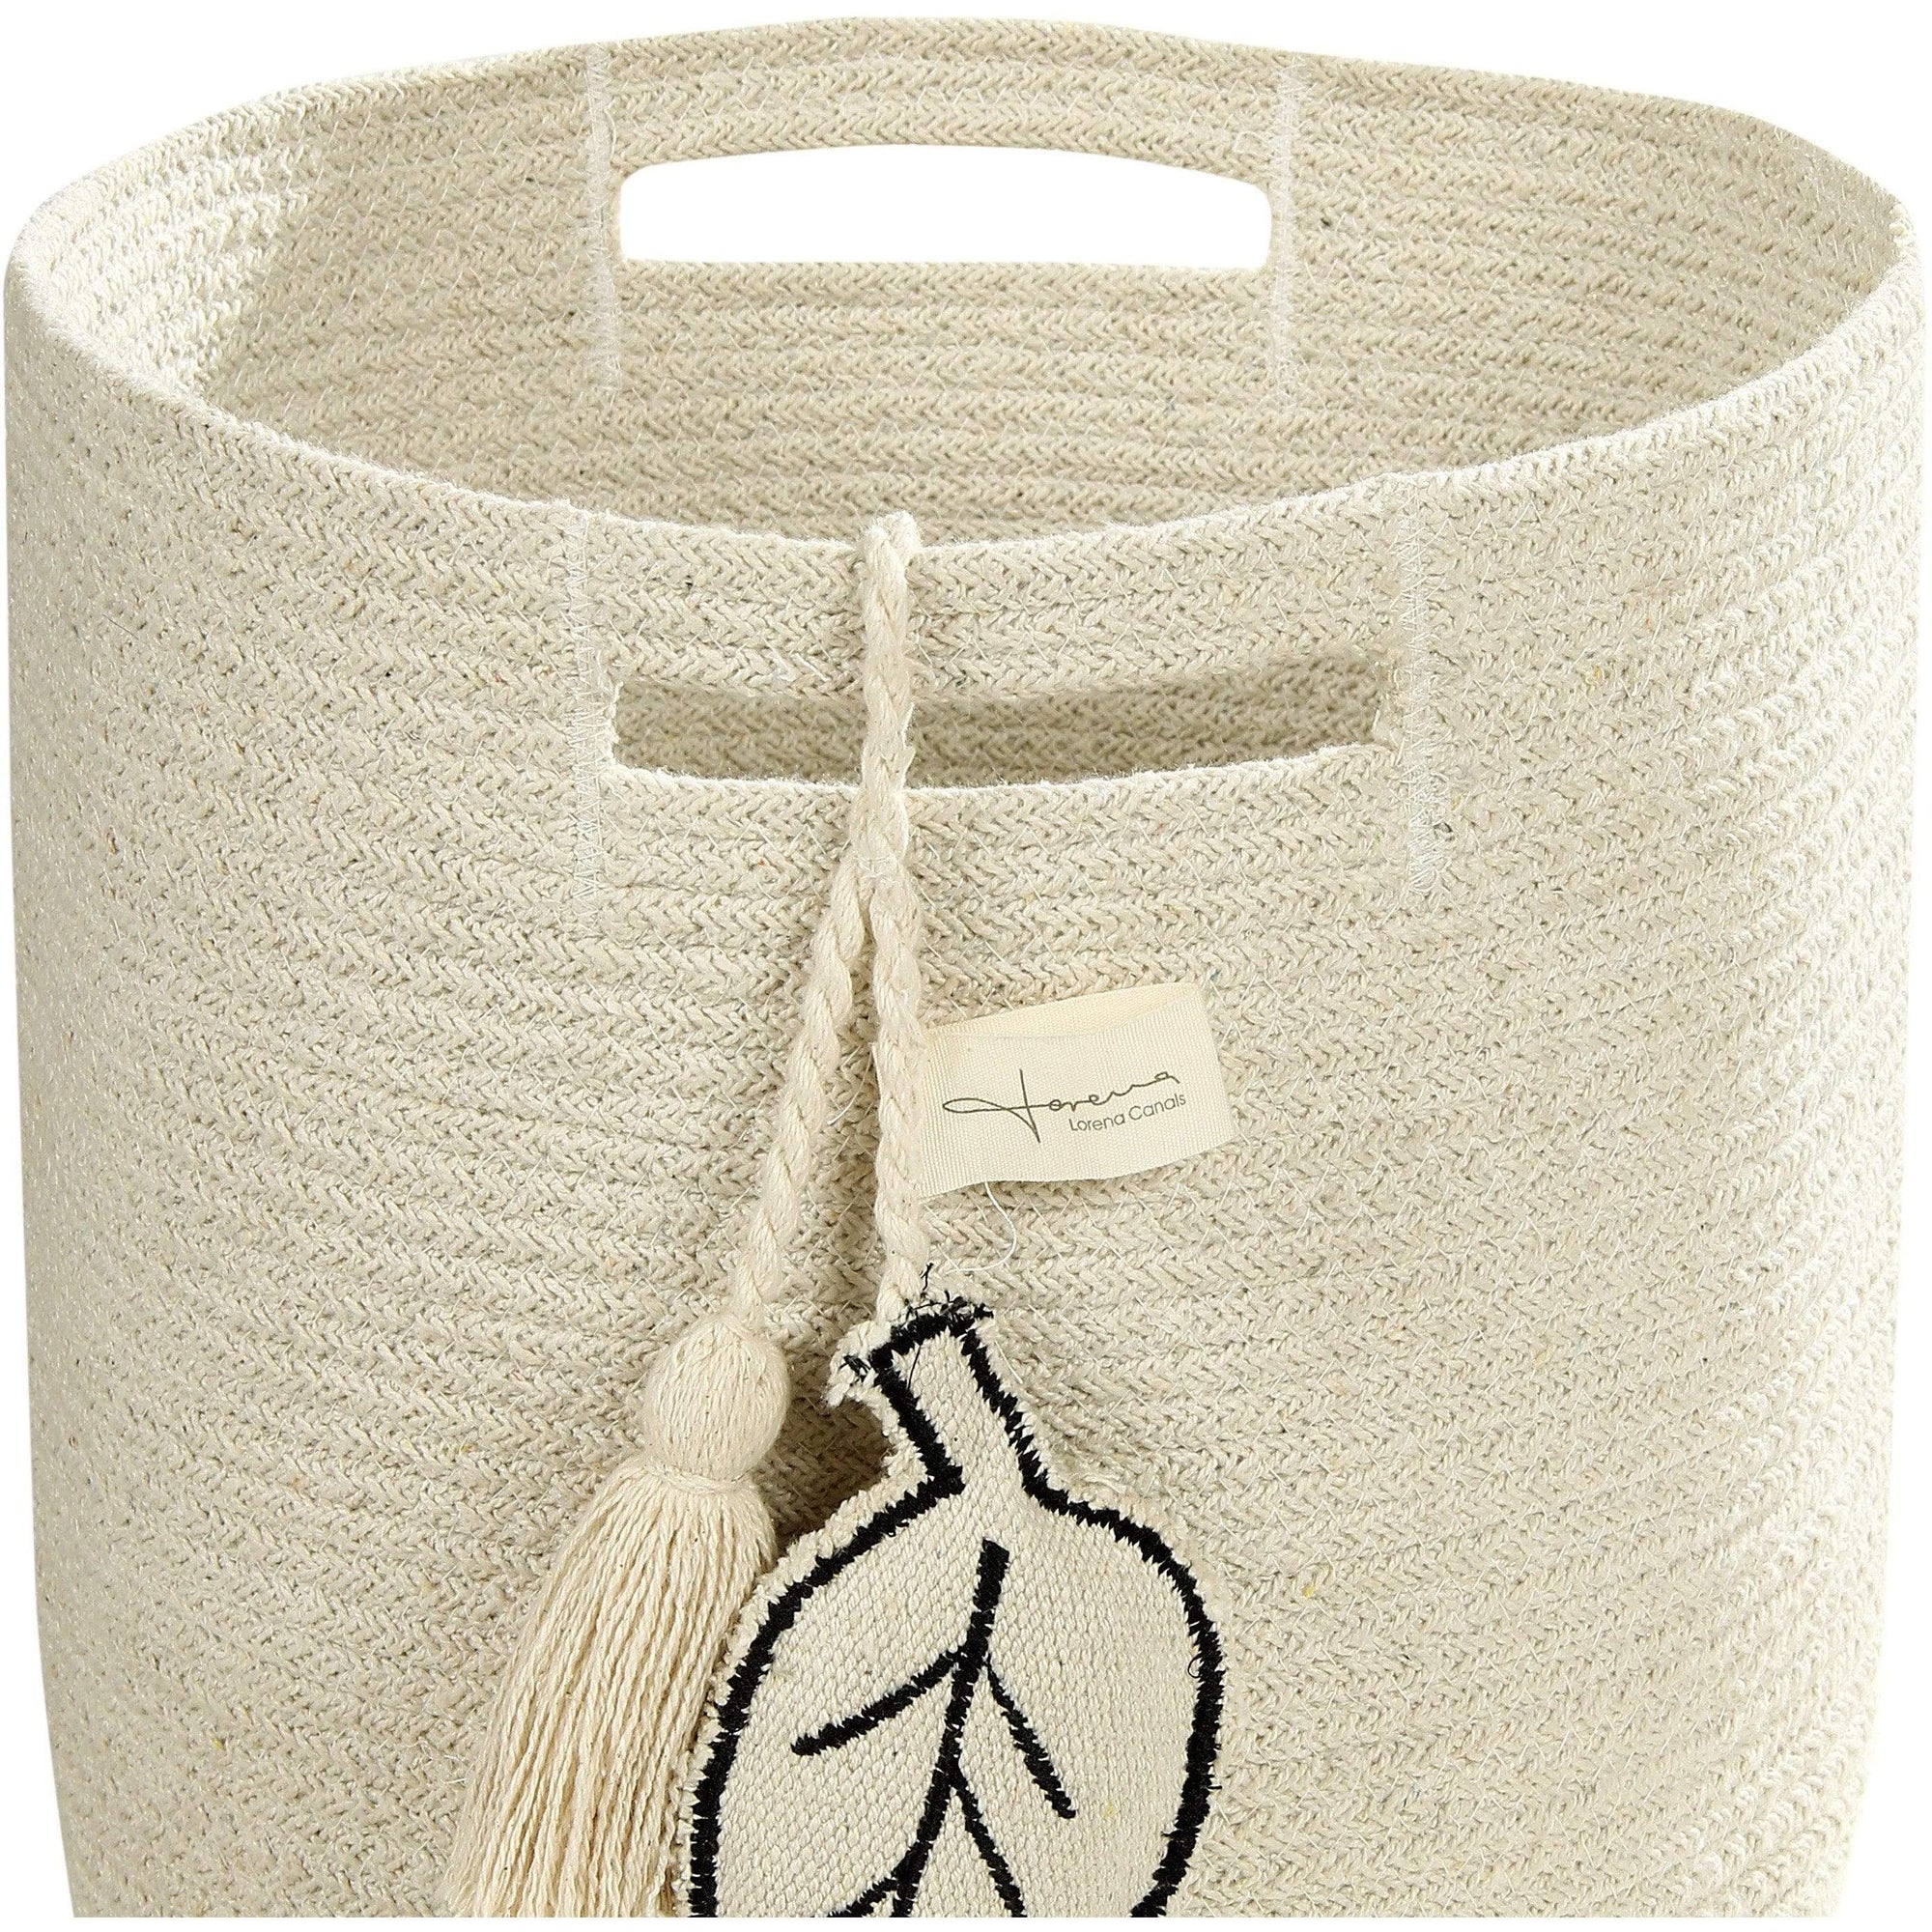 Rugs by Roo | Lorena Canals Leaf Natural Basket-BSK-LEAF-NAT